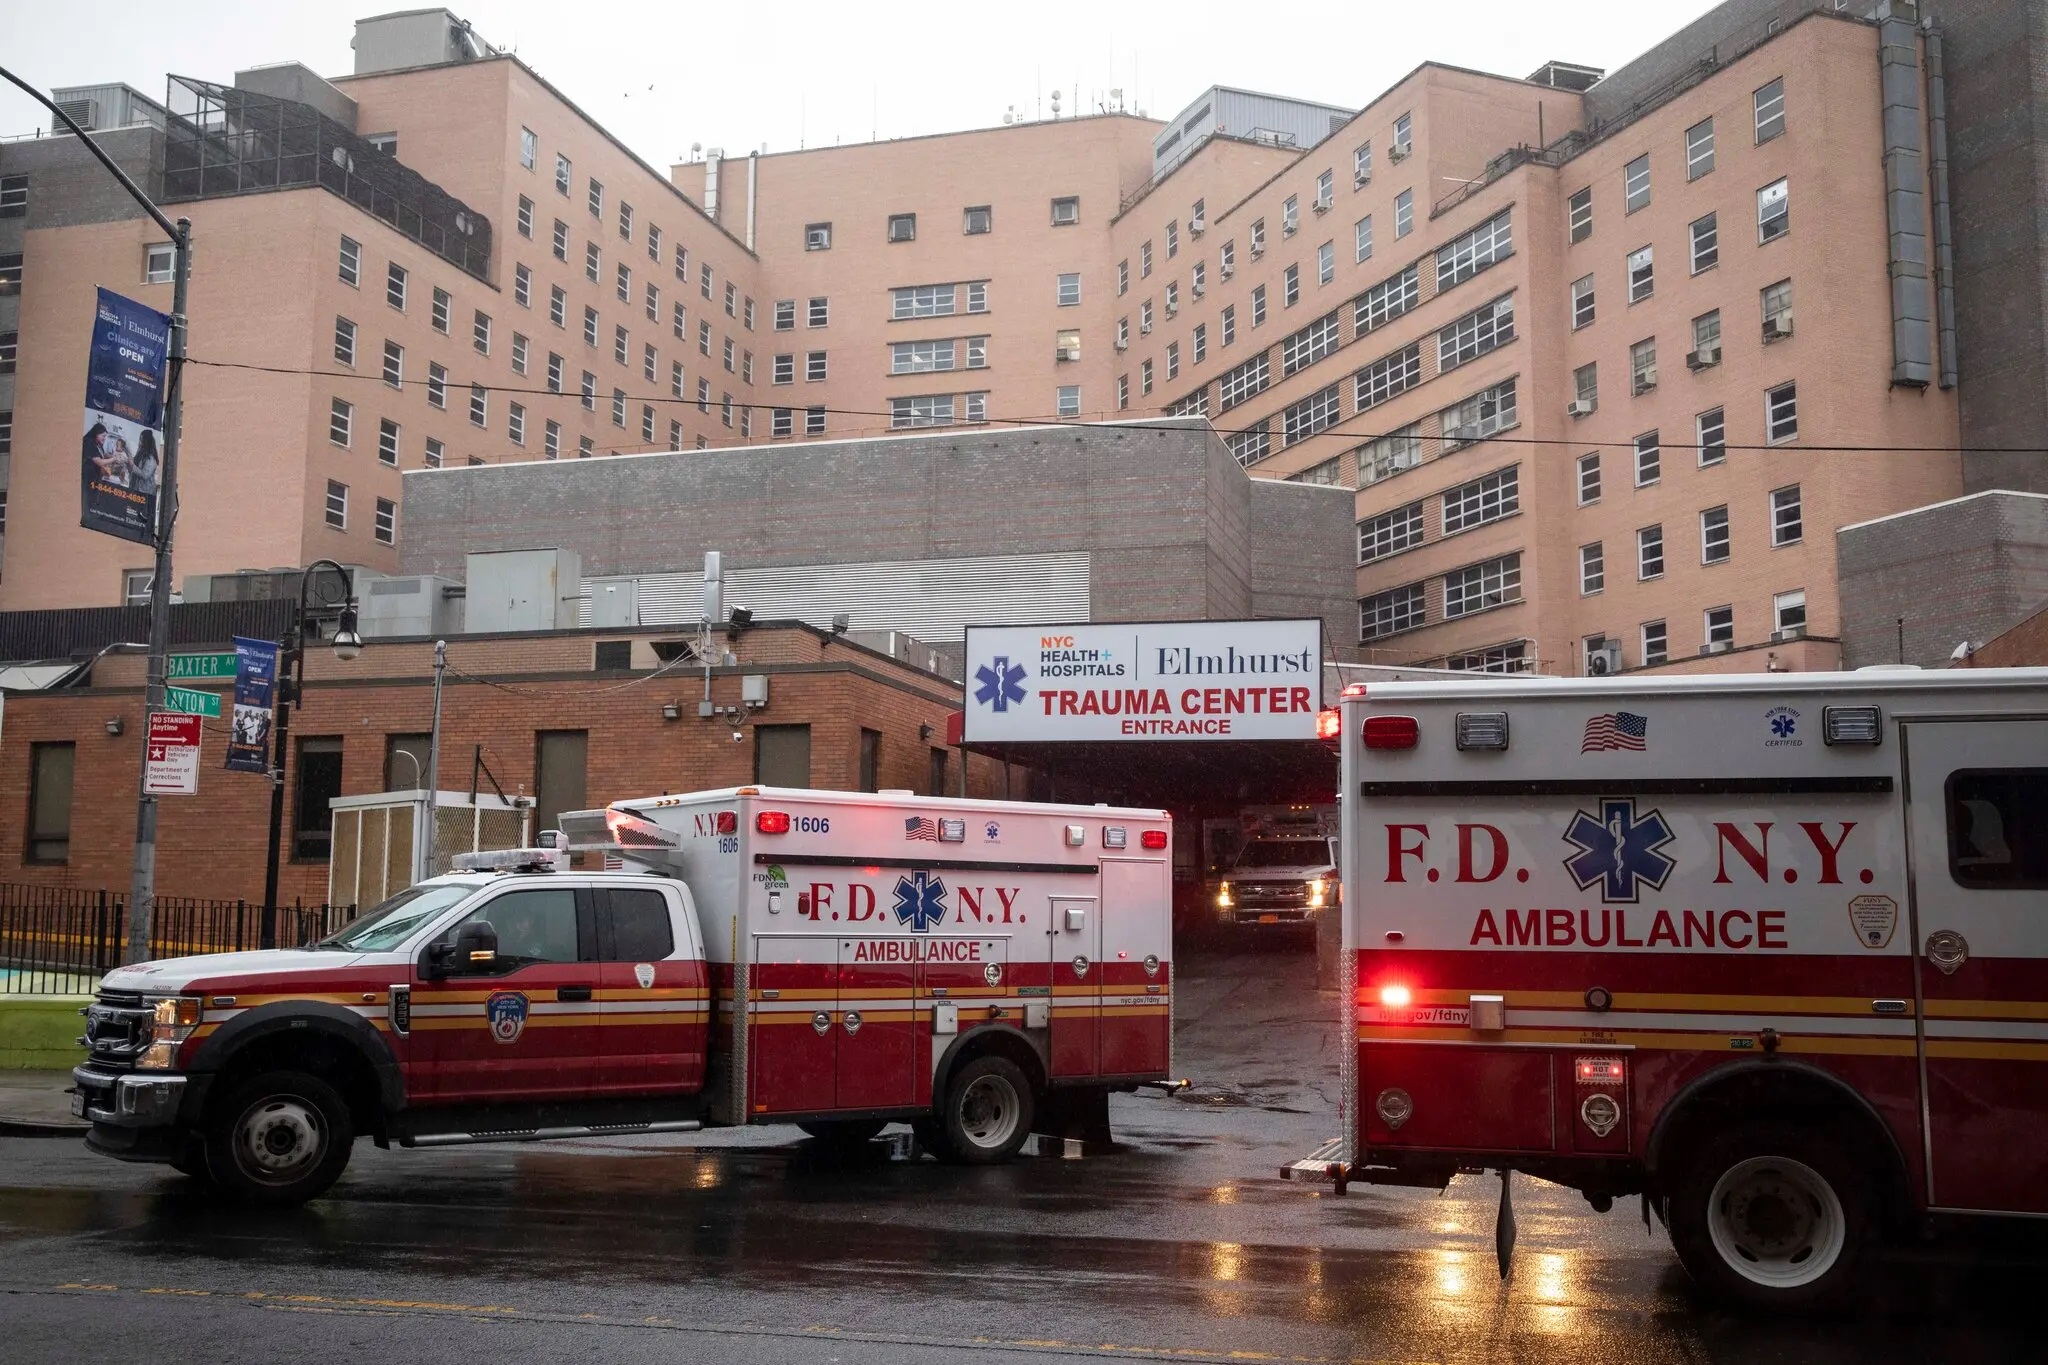 12,6 Minuten bis Ersthelfer in NY bei lebensbedrohlichem medizinischen Notfall eintreffen – landesweit 7 Minuten